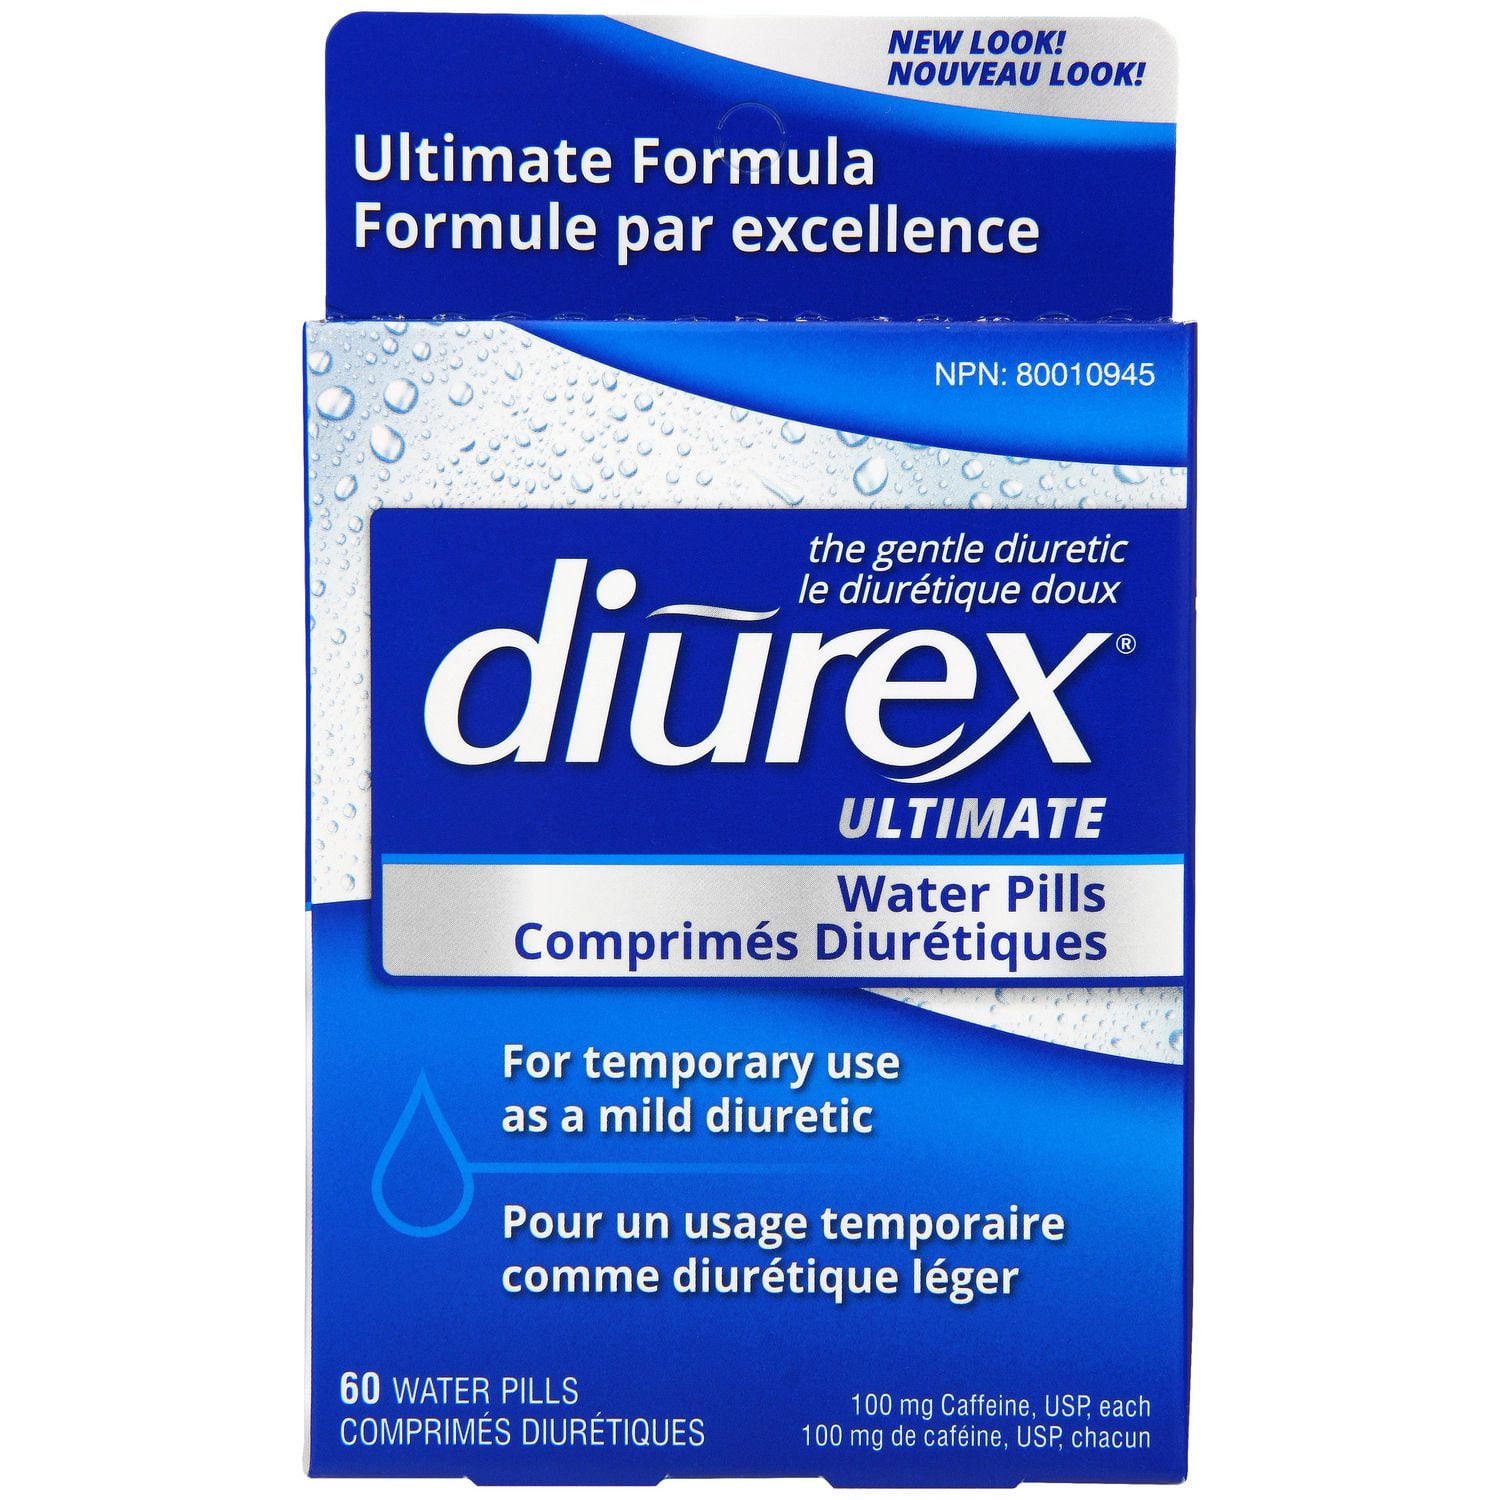 Diurex Water Pills + Pain Relief - Relieve Water Bloat, Cramps, & Fatigue -  42 Ct